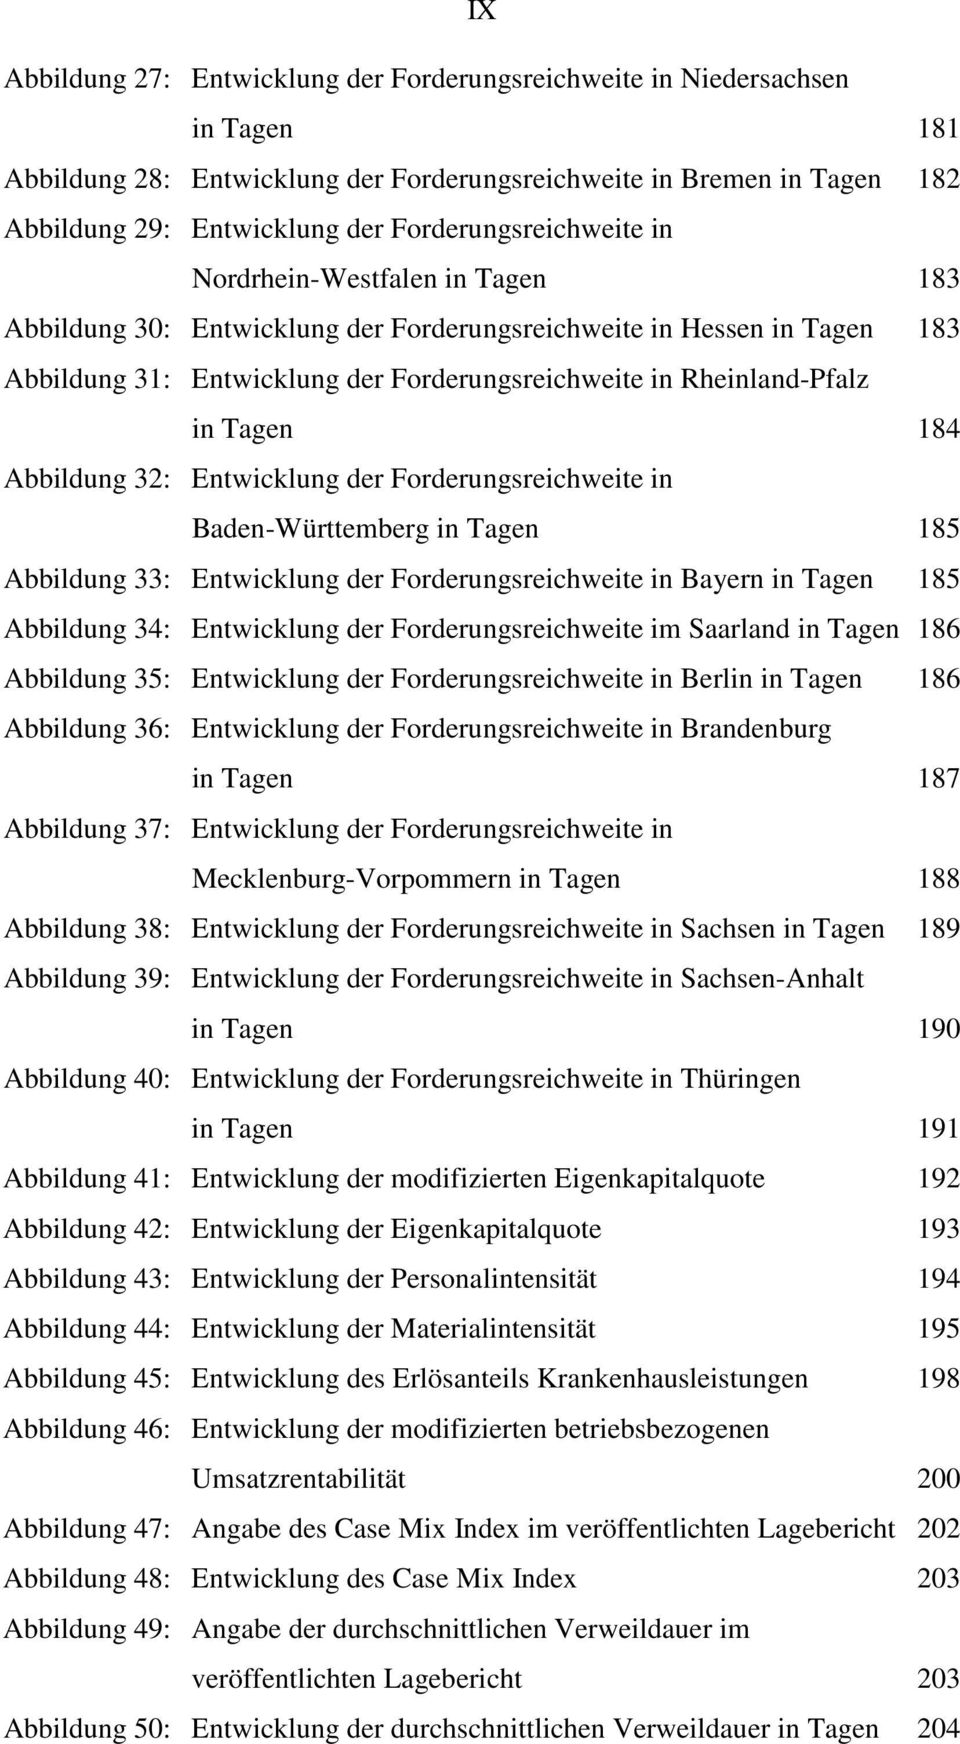 Rheinland-Pfalz in Tagen 184 Abbildung 32: Entwicklung der Forderungsreichweite in Baden-Württemberg in Tagen 185 Abbildung 33: Entwicklung der Forderungsreichweite in Bayern in Tagen 185 Abbildung